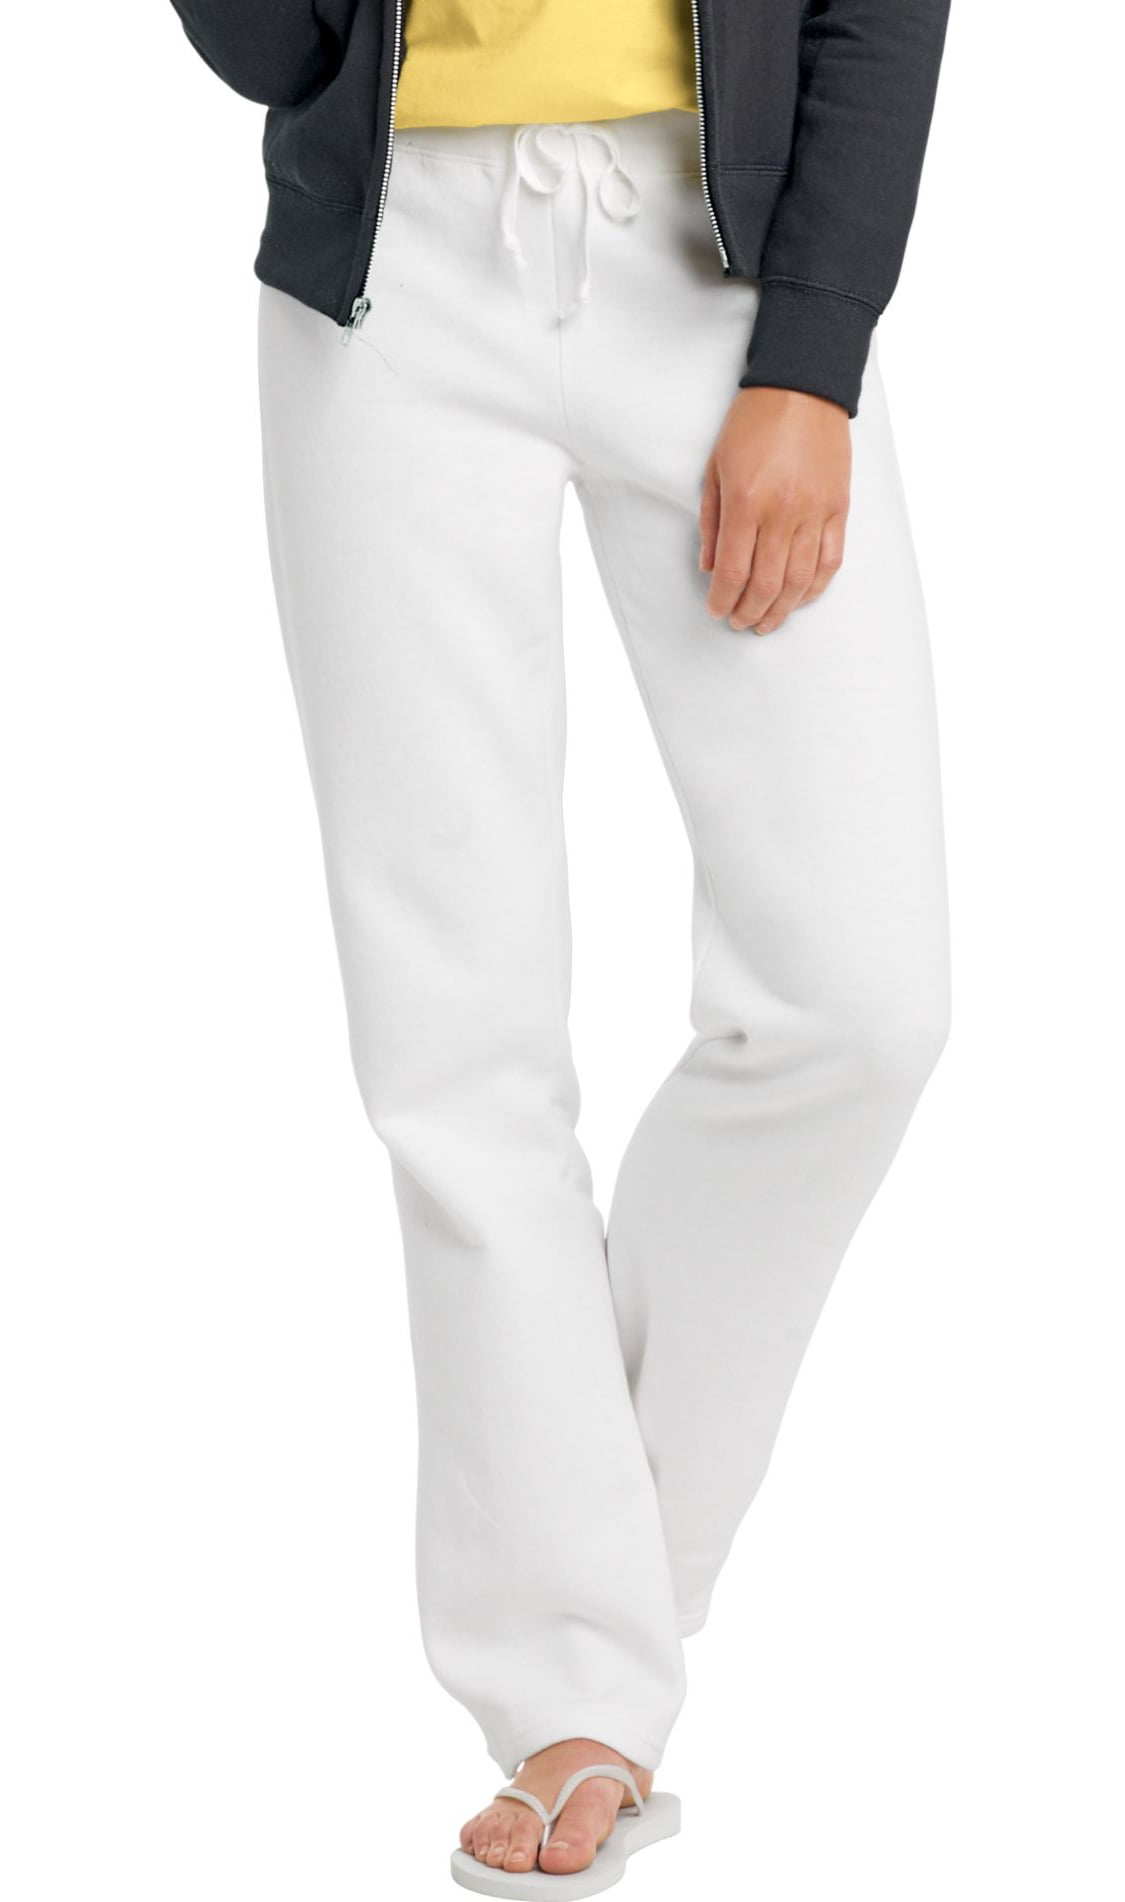 Hanes - W550 Ecosmart Cotton-Rich Women Drawstring Sweatpants Size 3 ...